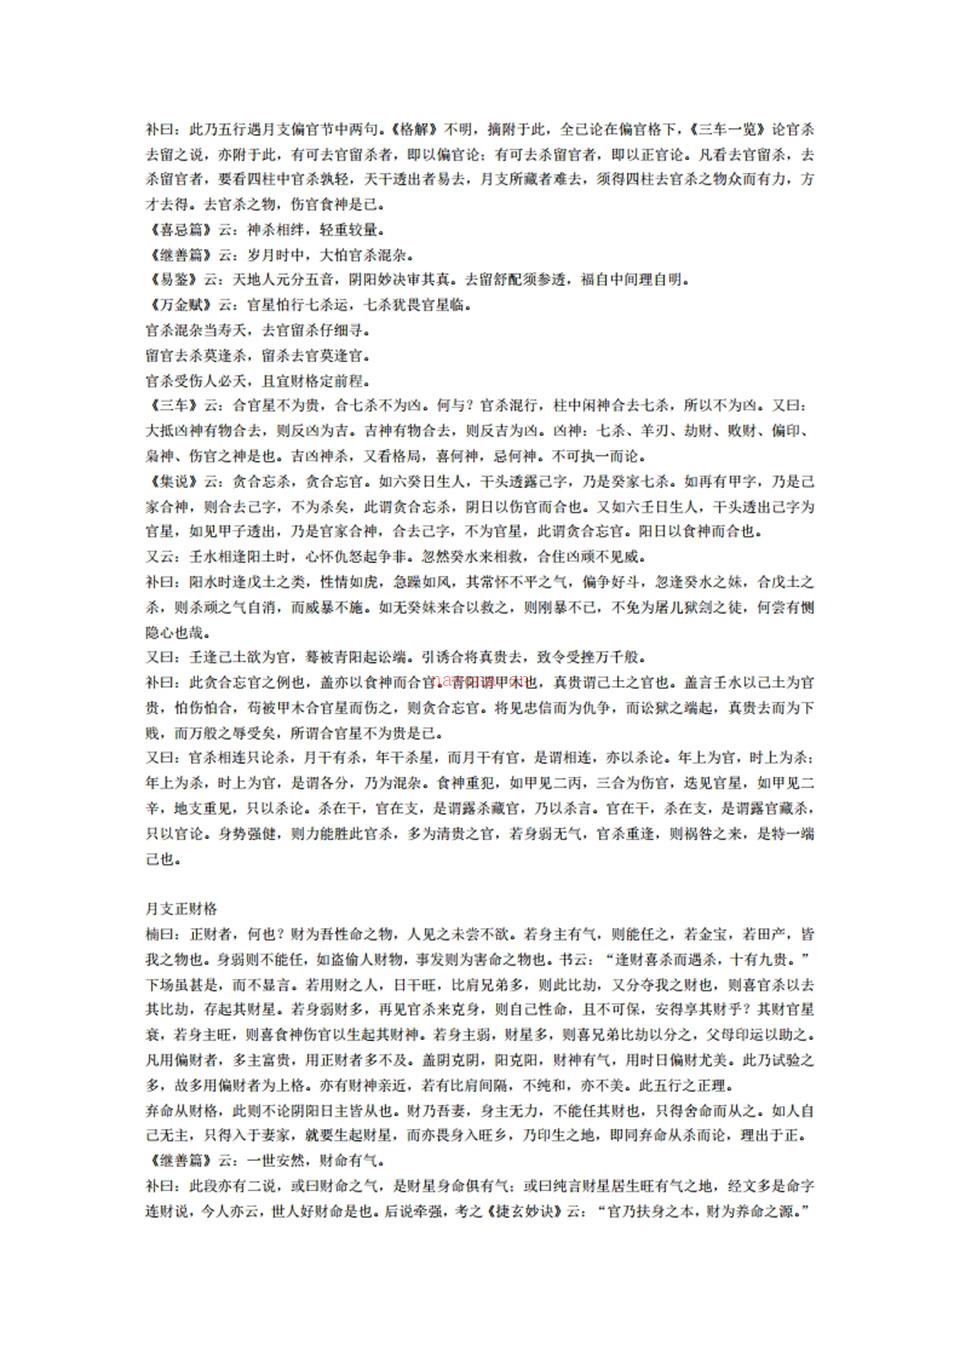 《神峰通考》选节.pdf 百度网盘资源